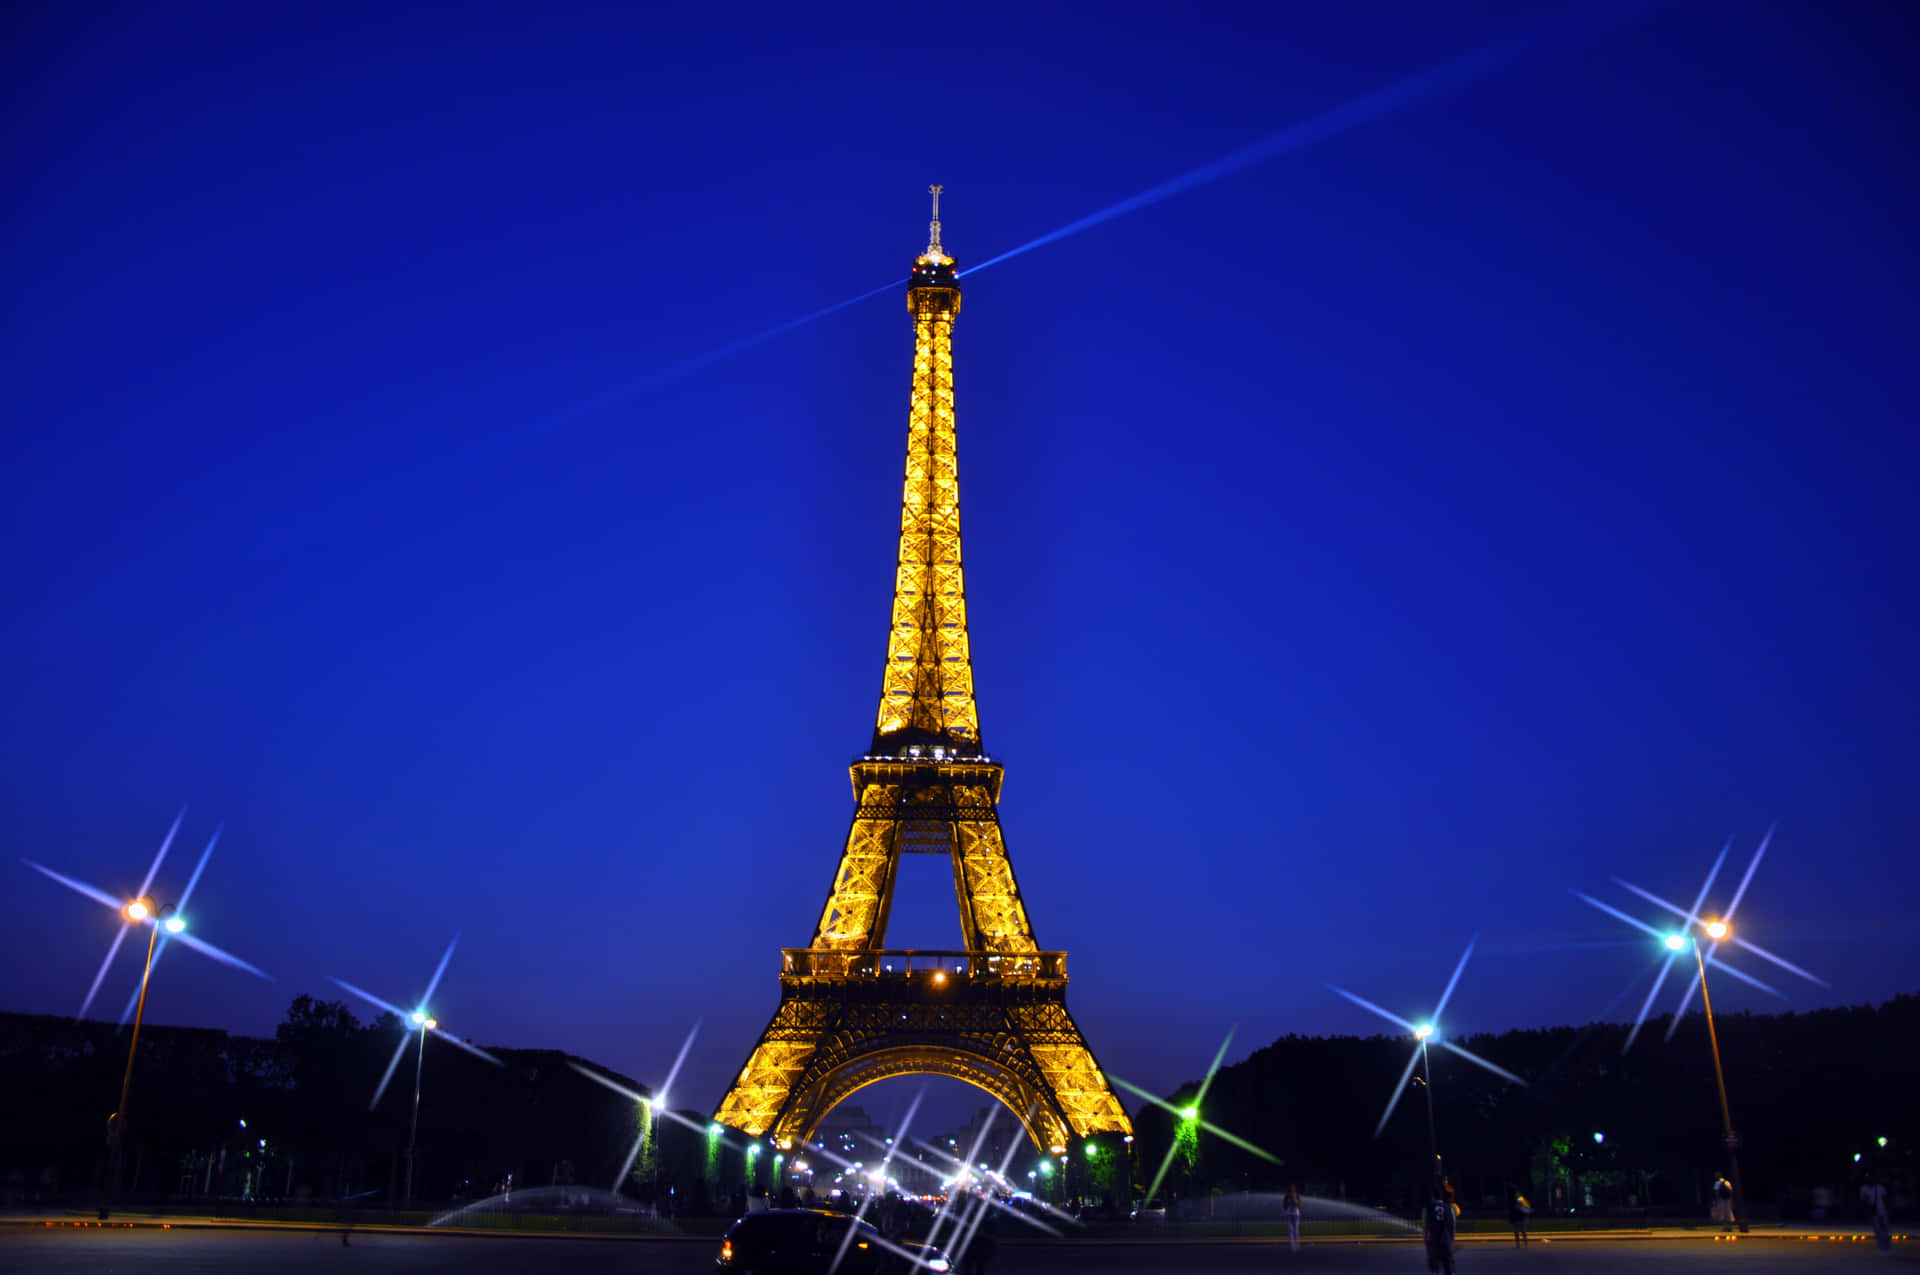 Imagende La Torre Eiffel Azul Bajo El Cielo Nocturno.